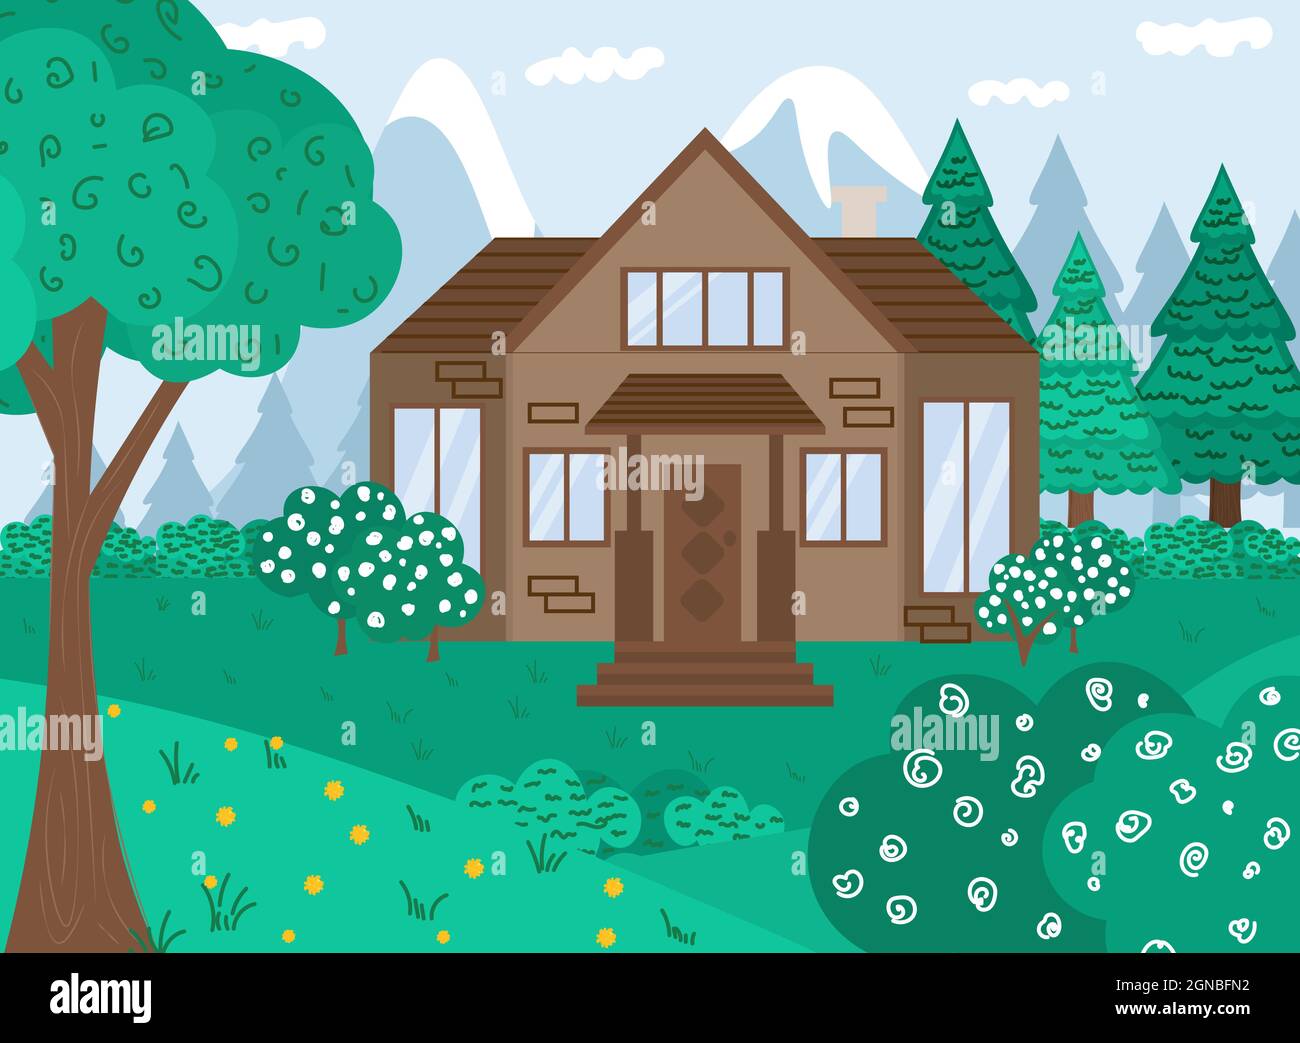 Vektorgrafik flach. Sommer Waldlandschaft mit Haus und Bäumen. Familie Vorstadthaus. Haus in einem Wald und Bergen auf einem blauen Himmel Stock Vektor